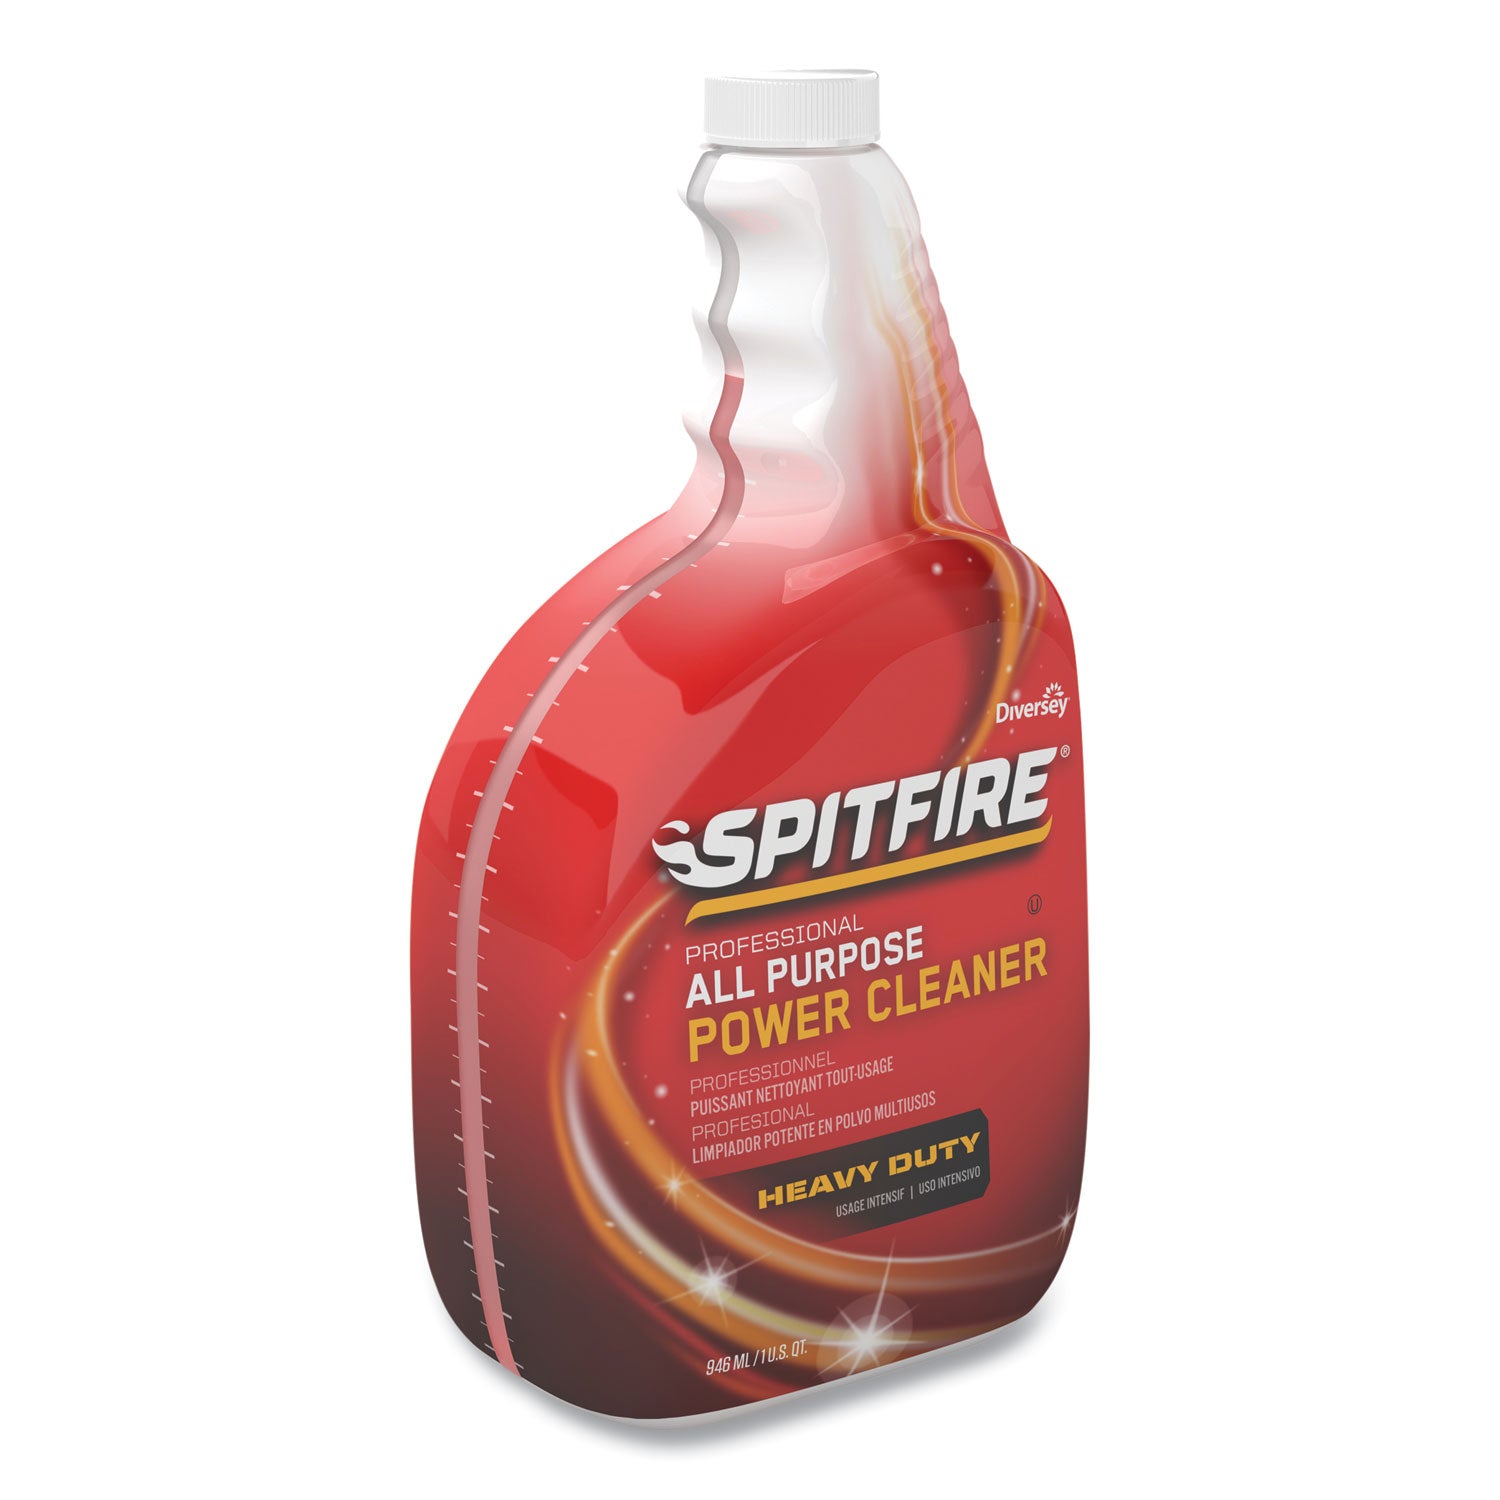 spitfire-all-purpose-power-cleaner-32-oz-spray-bottle_dvocbd540038ea - 3